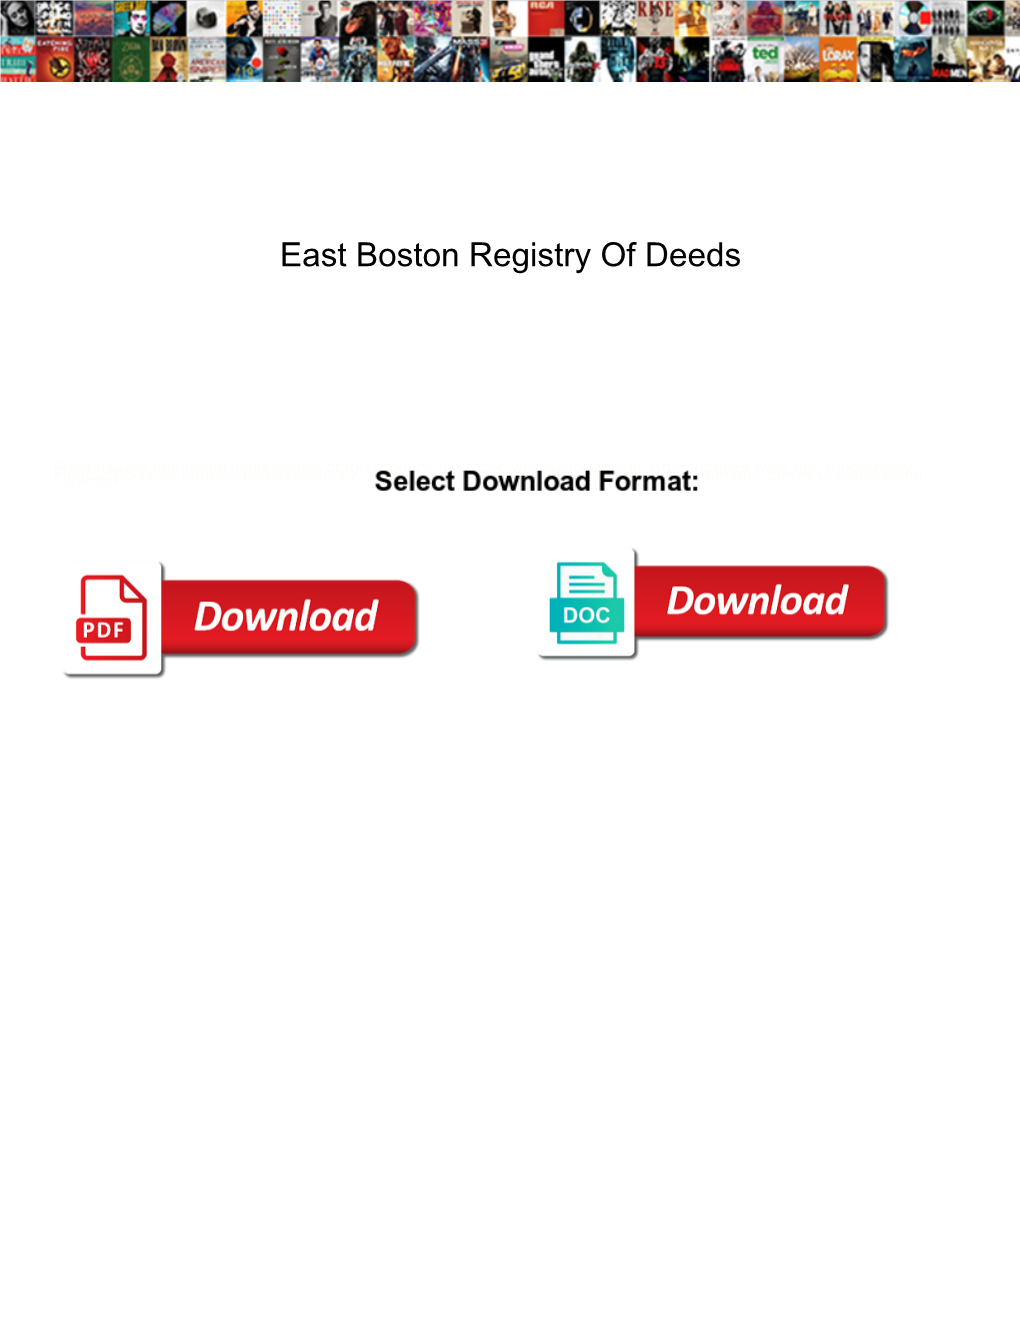 East Boston Registry of Deeds